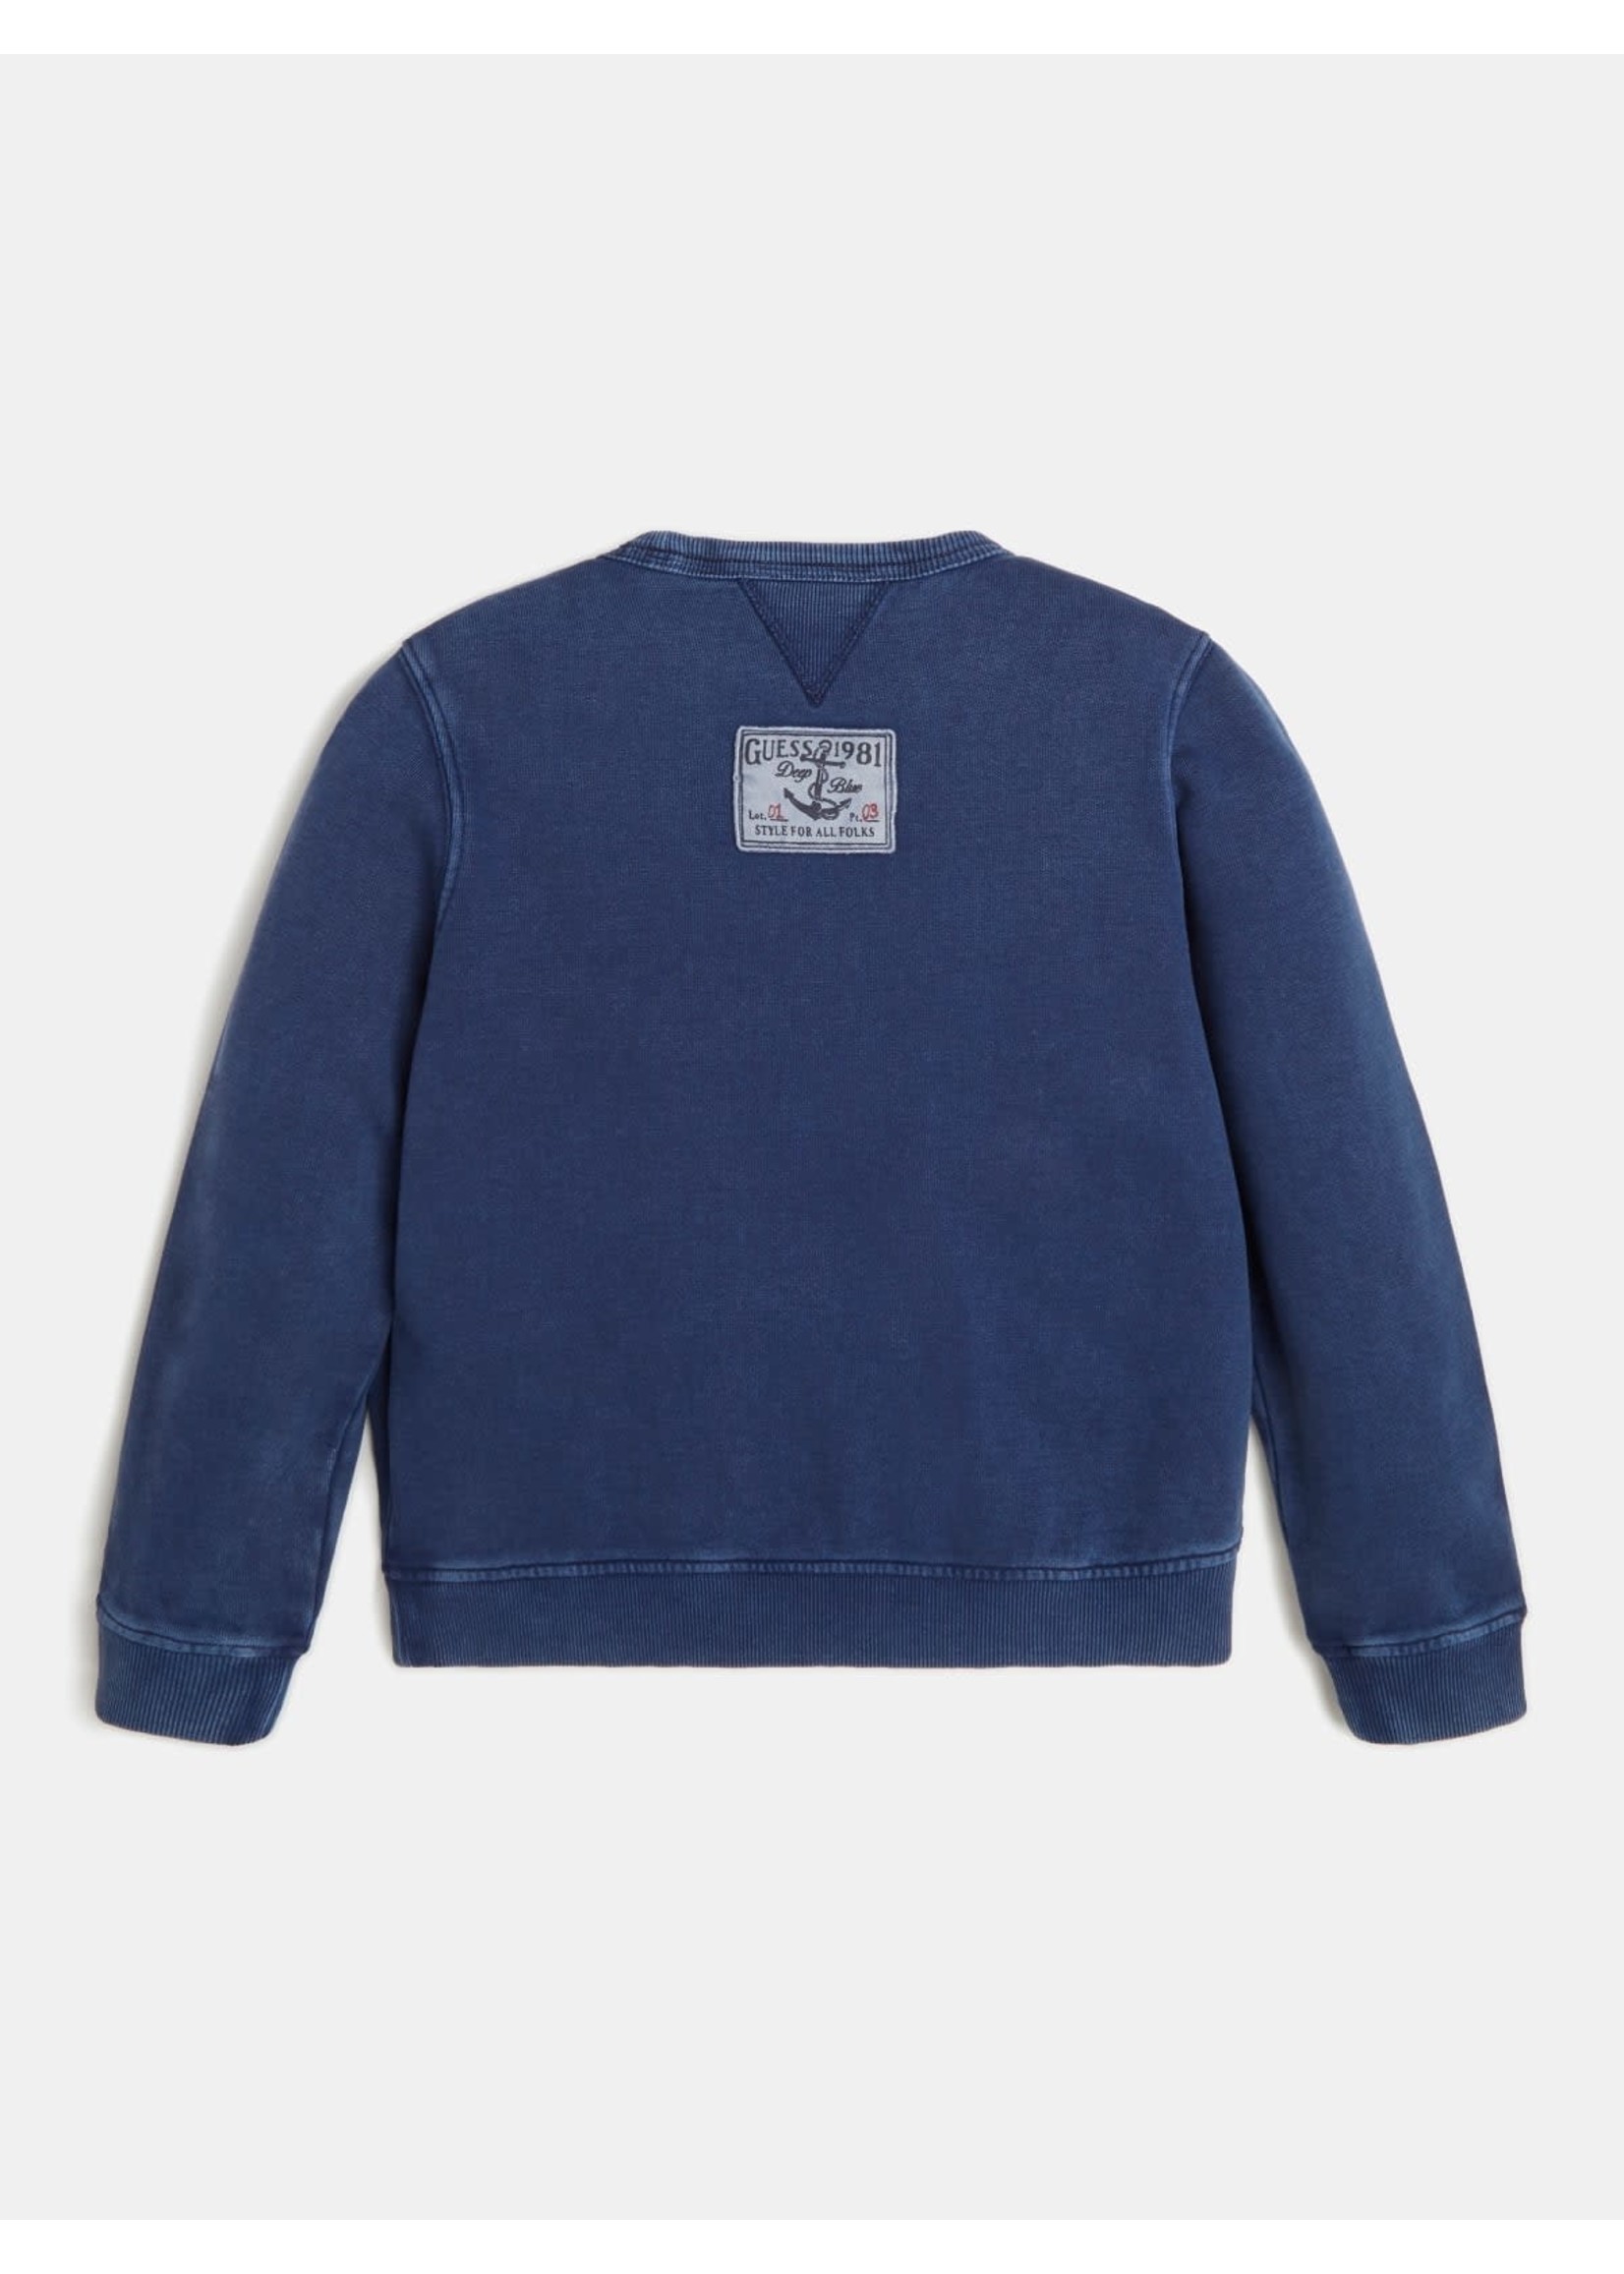 Guess Guess Boy sweater dark blue wash - L2GQ03KB0Q0